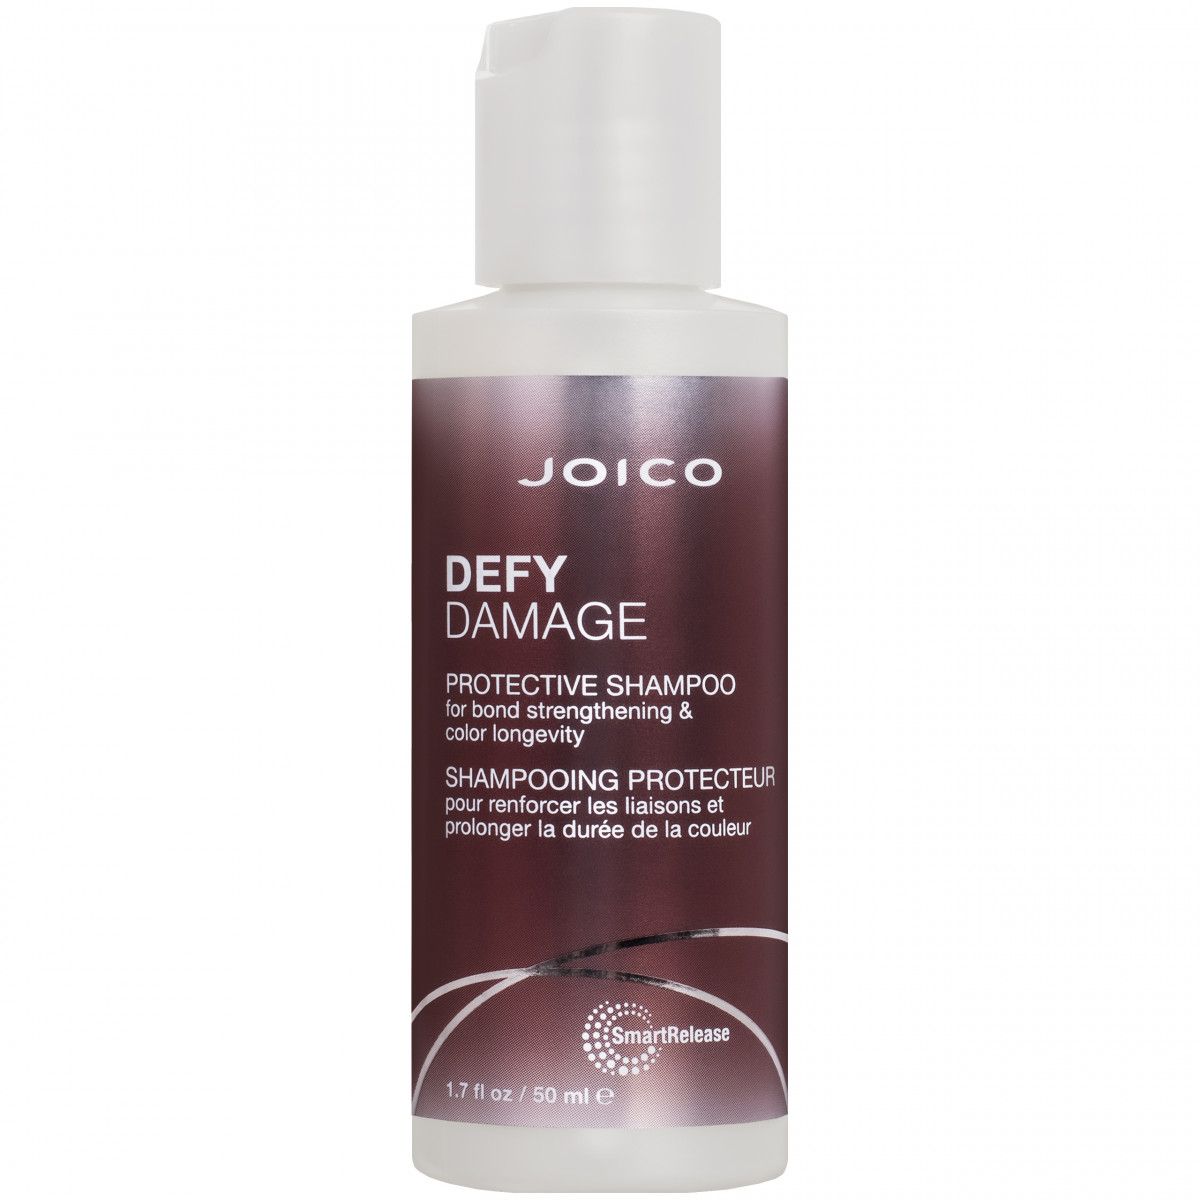 Joico Defy Damage - szampon do pielęgnacji włosów zniszczonych, 50ml